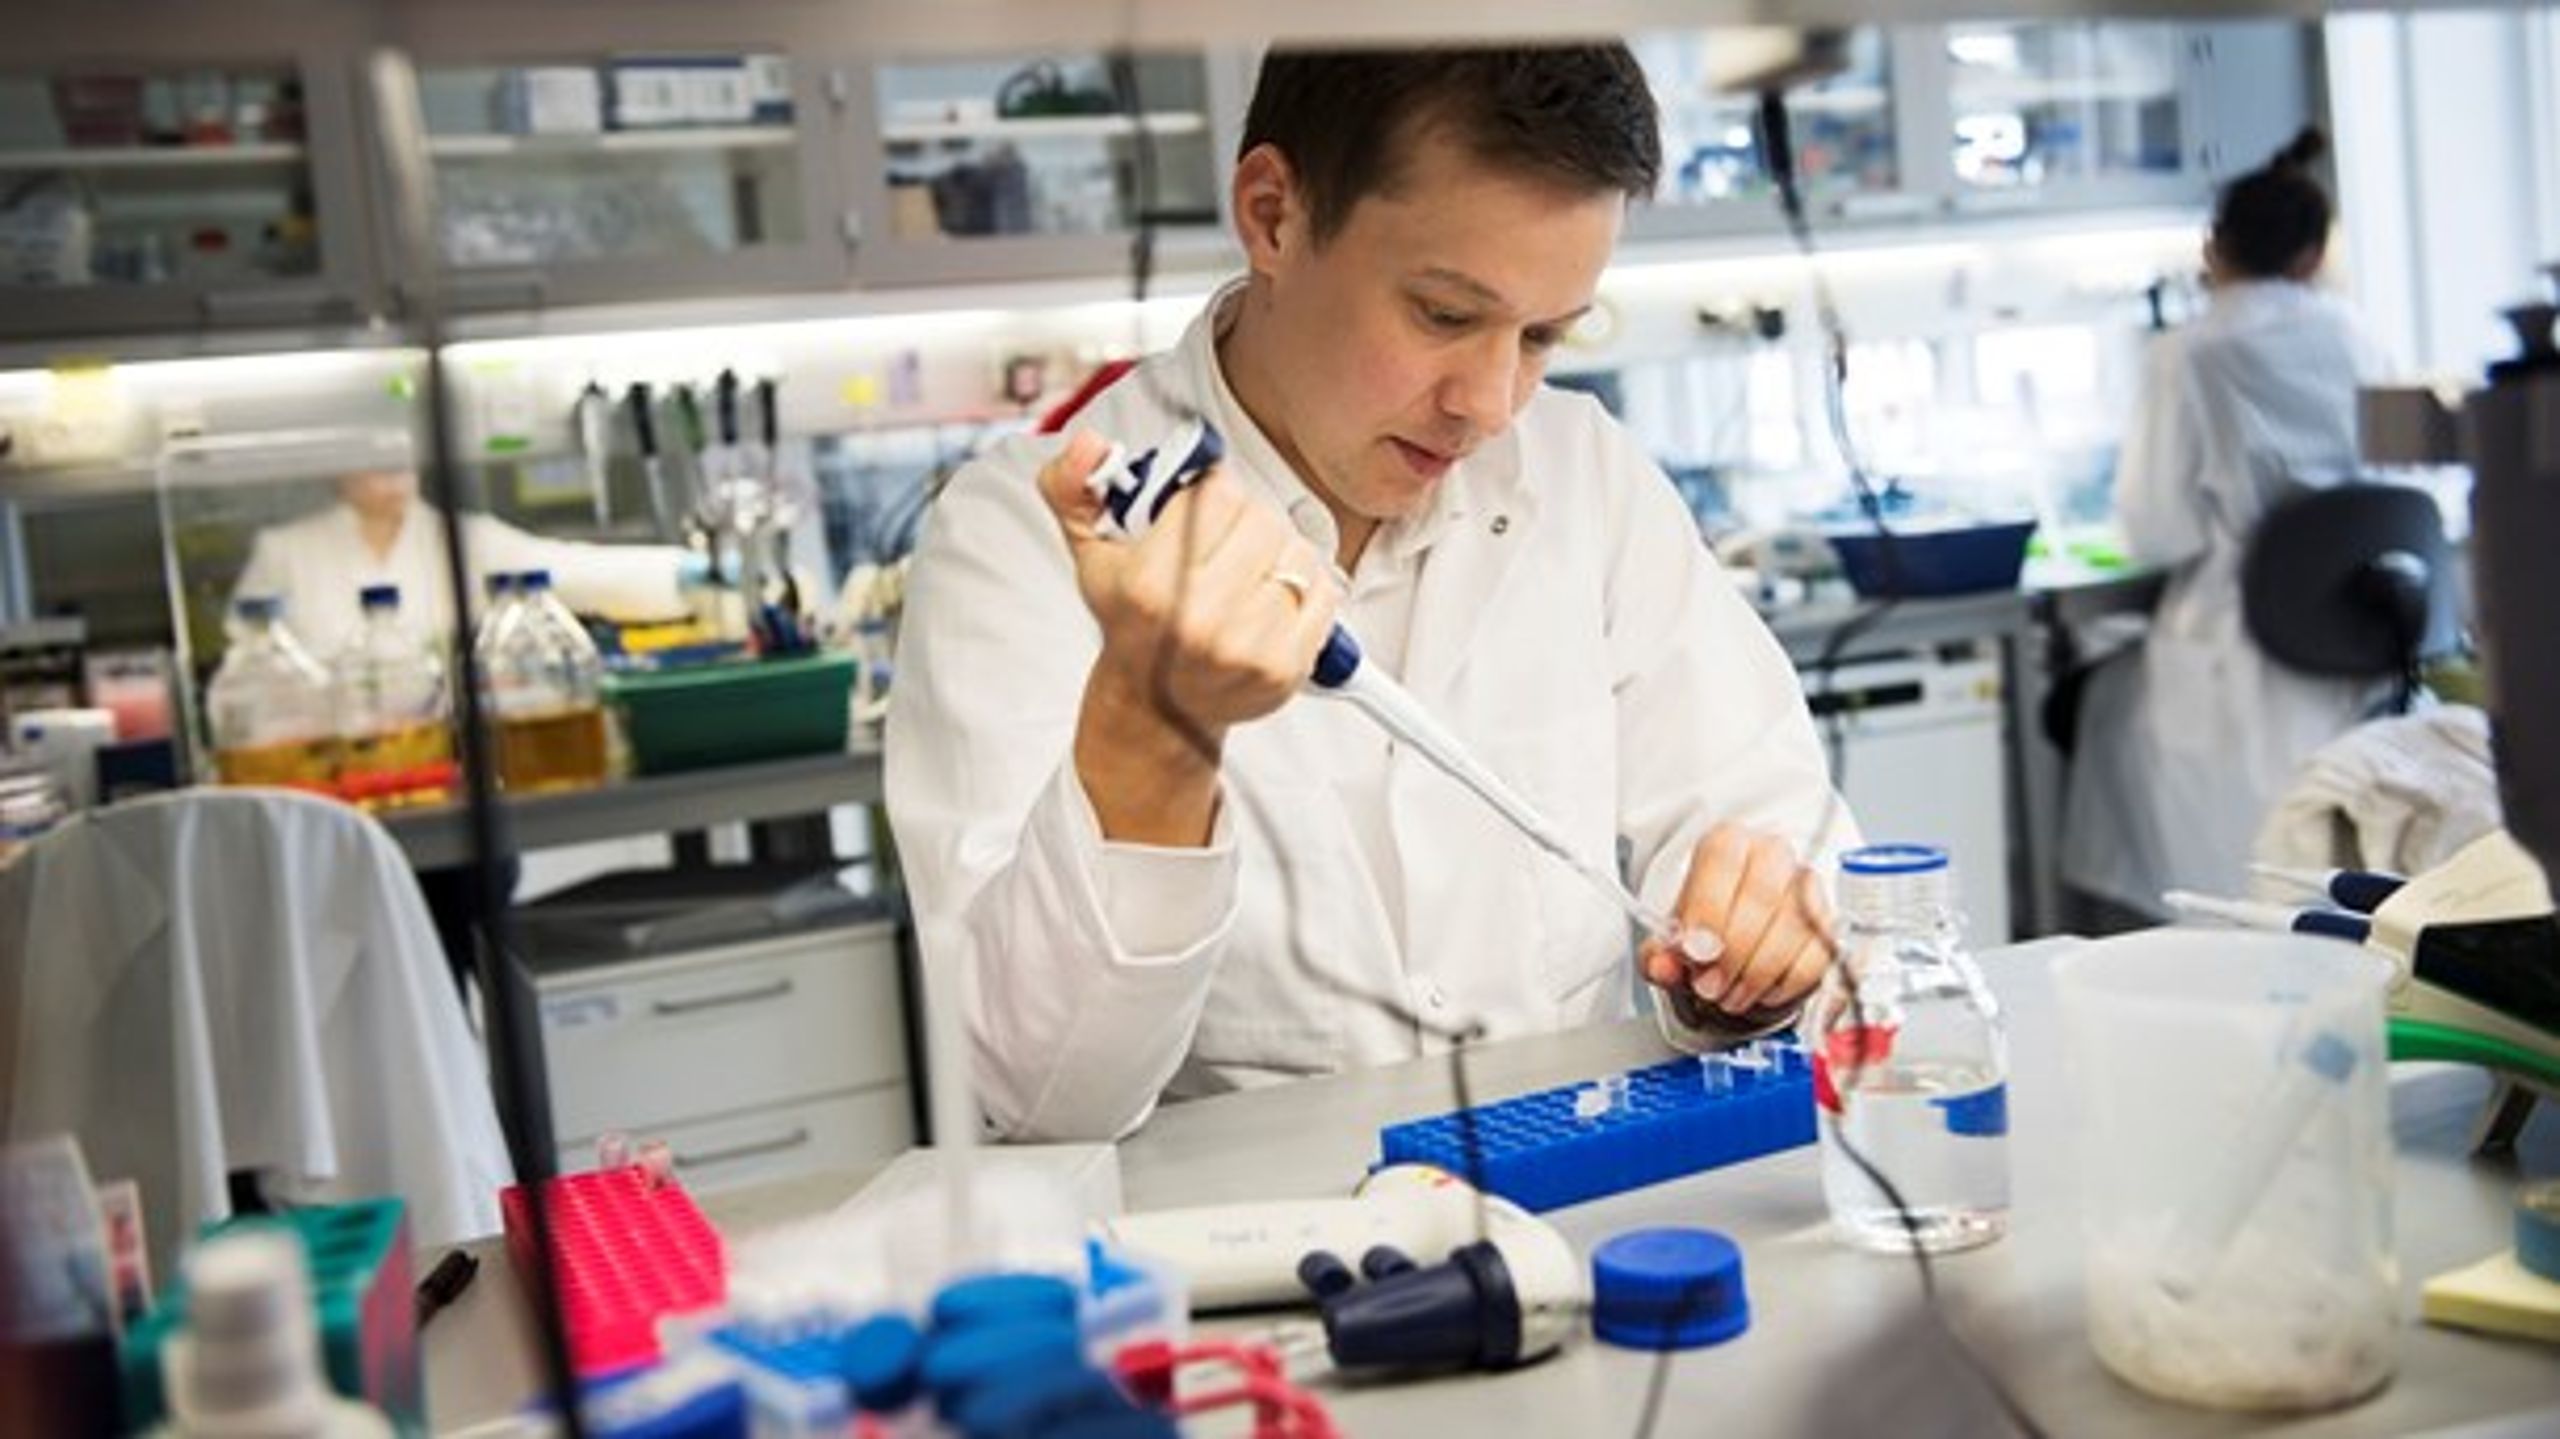 Medicon Valley i Ørestaden er ved at udvikle sig til et internationalt hotspot for forskning i life science.